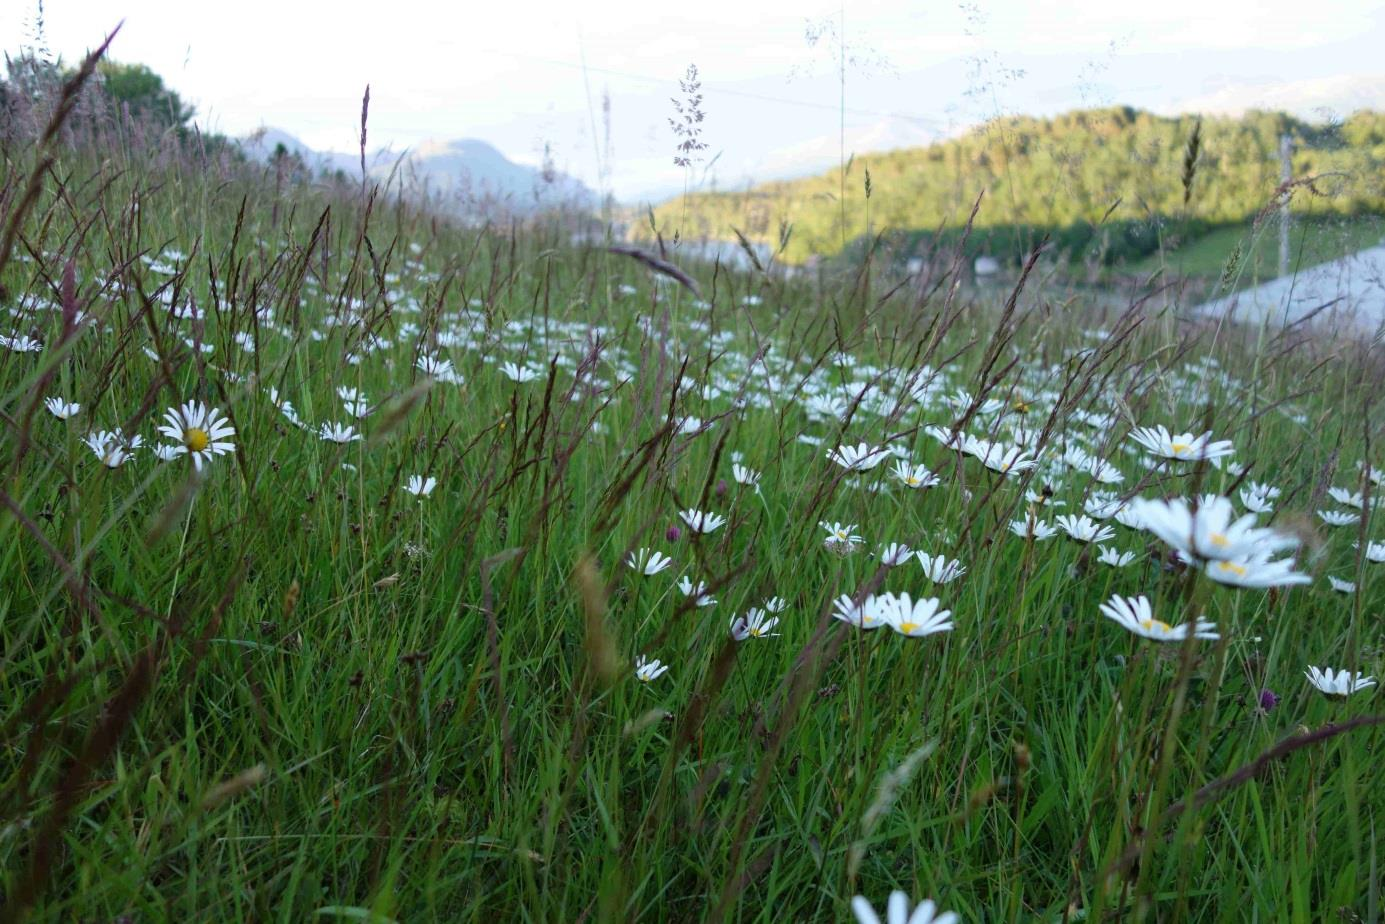 Kartlegging av utvalde naturtypar i Møre